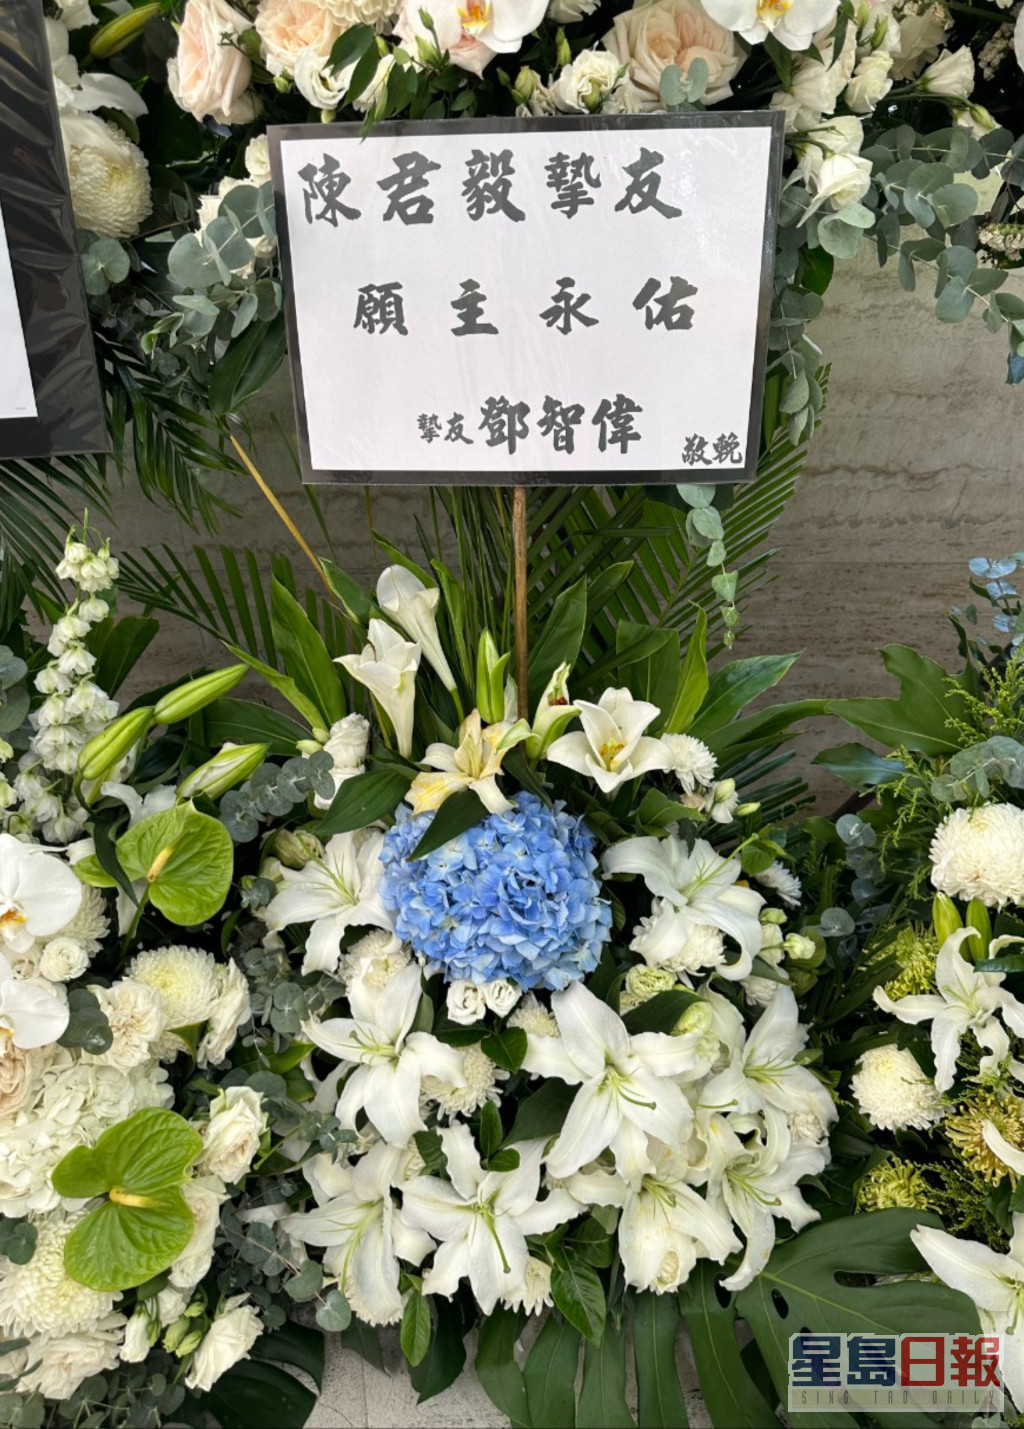 現時定居北京的音樂人鄧智偉亦有致送花牌。